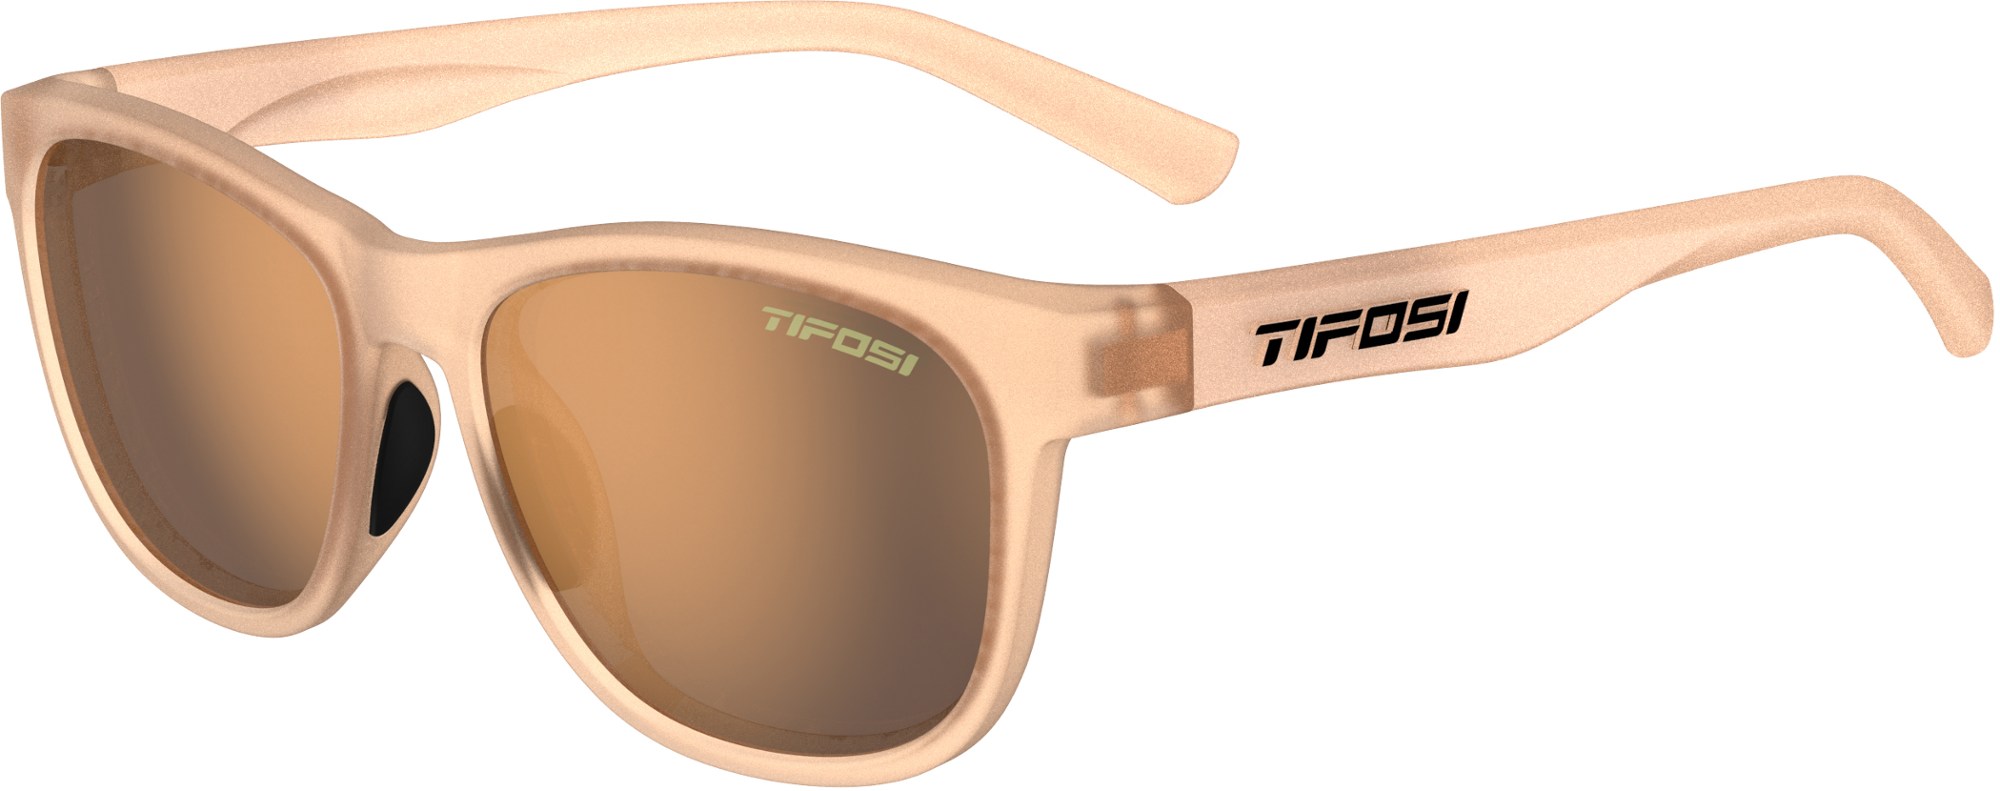 Поляризованные солнцезащитные очки Swank Tifosi, коричневый фото